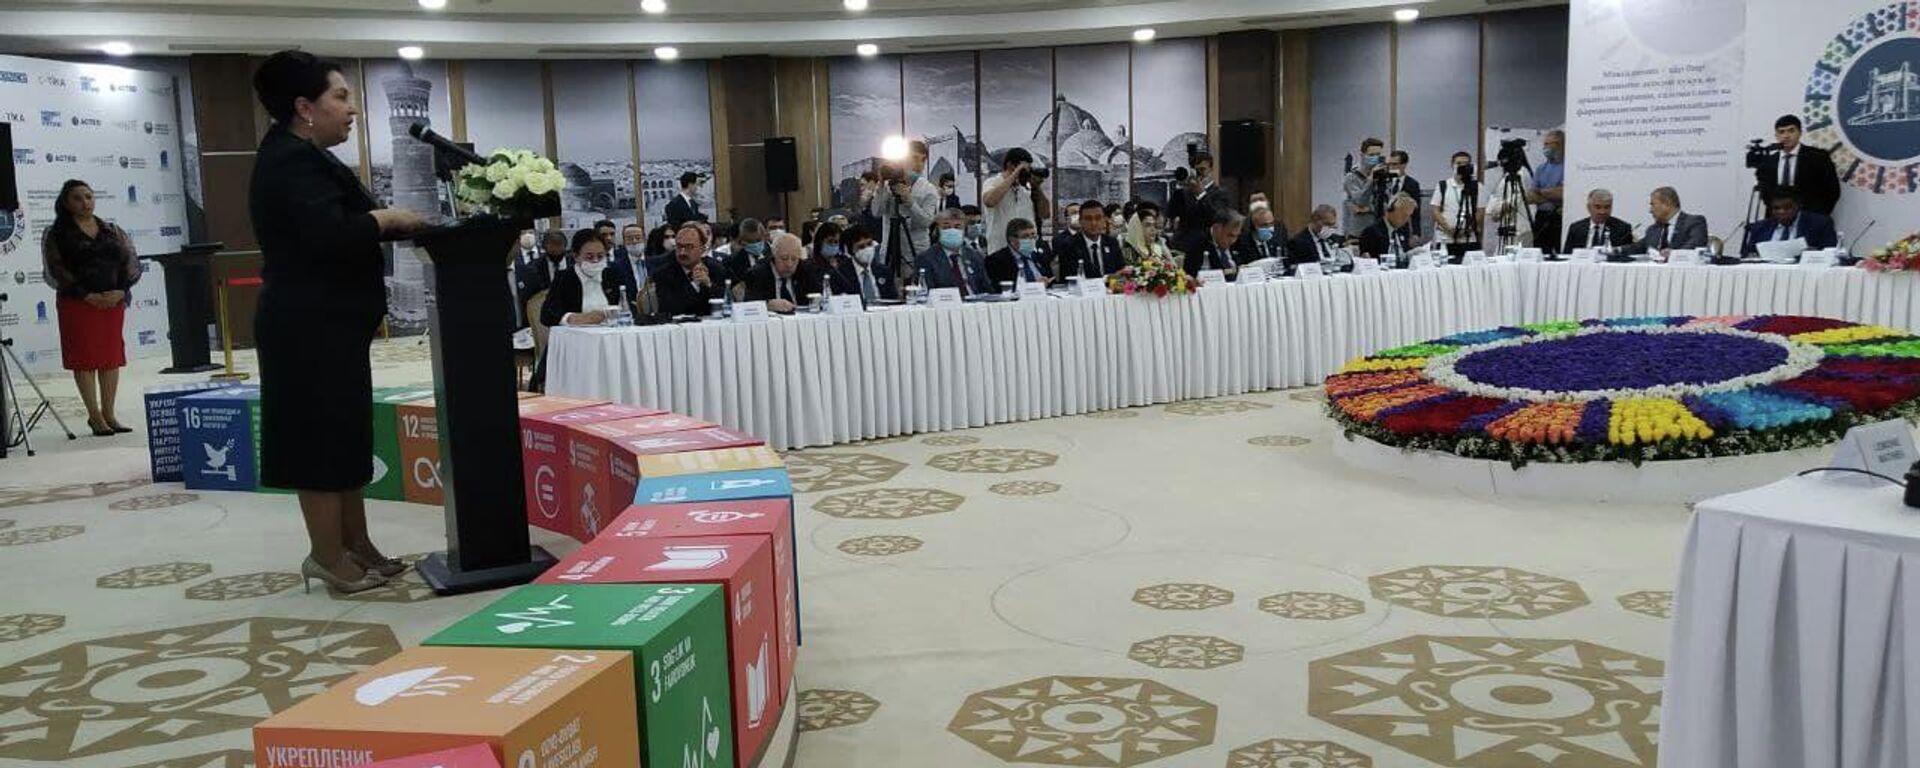 В Бухаре стартовал  Международный форум глобального межпарламентского сотрудничества в реализации Целей устойчивого развития - Sputnik Узбекистан, 1920, 24.06.2021